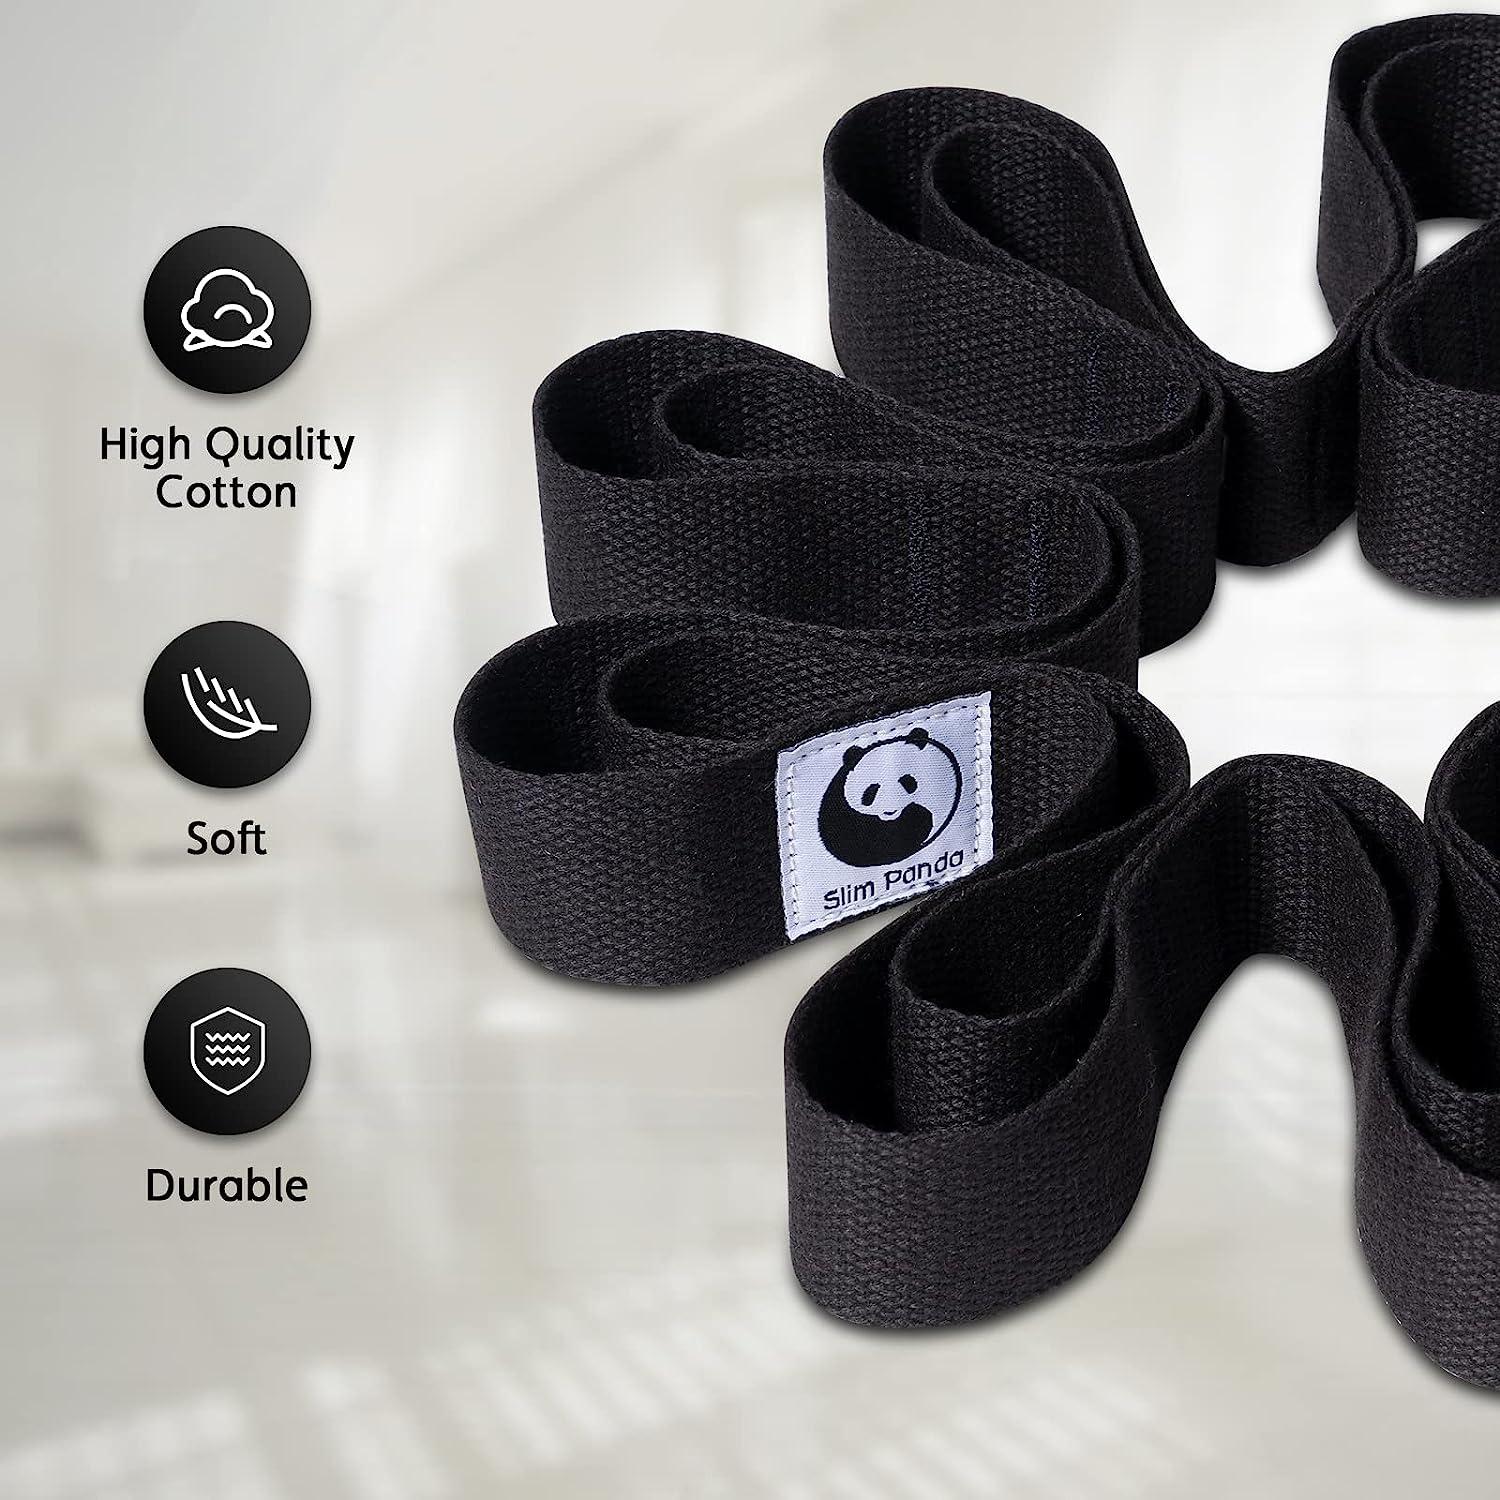 Slim Panda Yoga Mat Straps for Carrying,Adjustable Yoga Mat